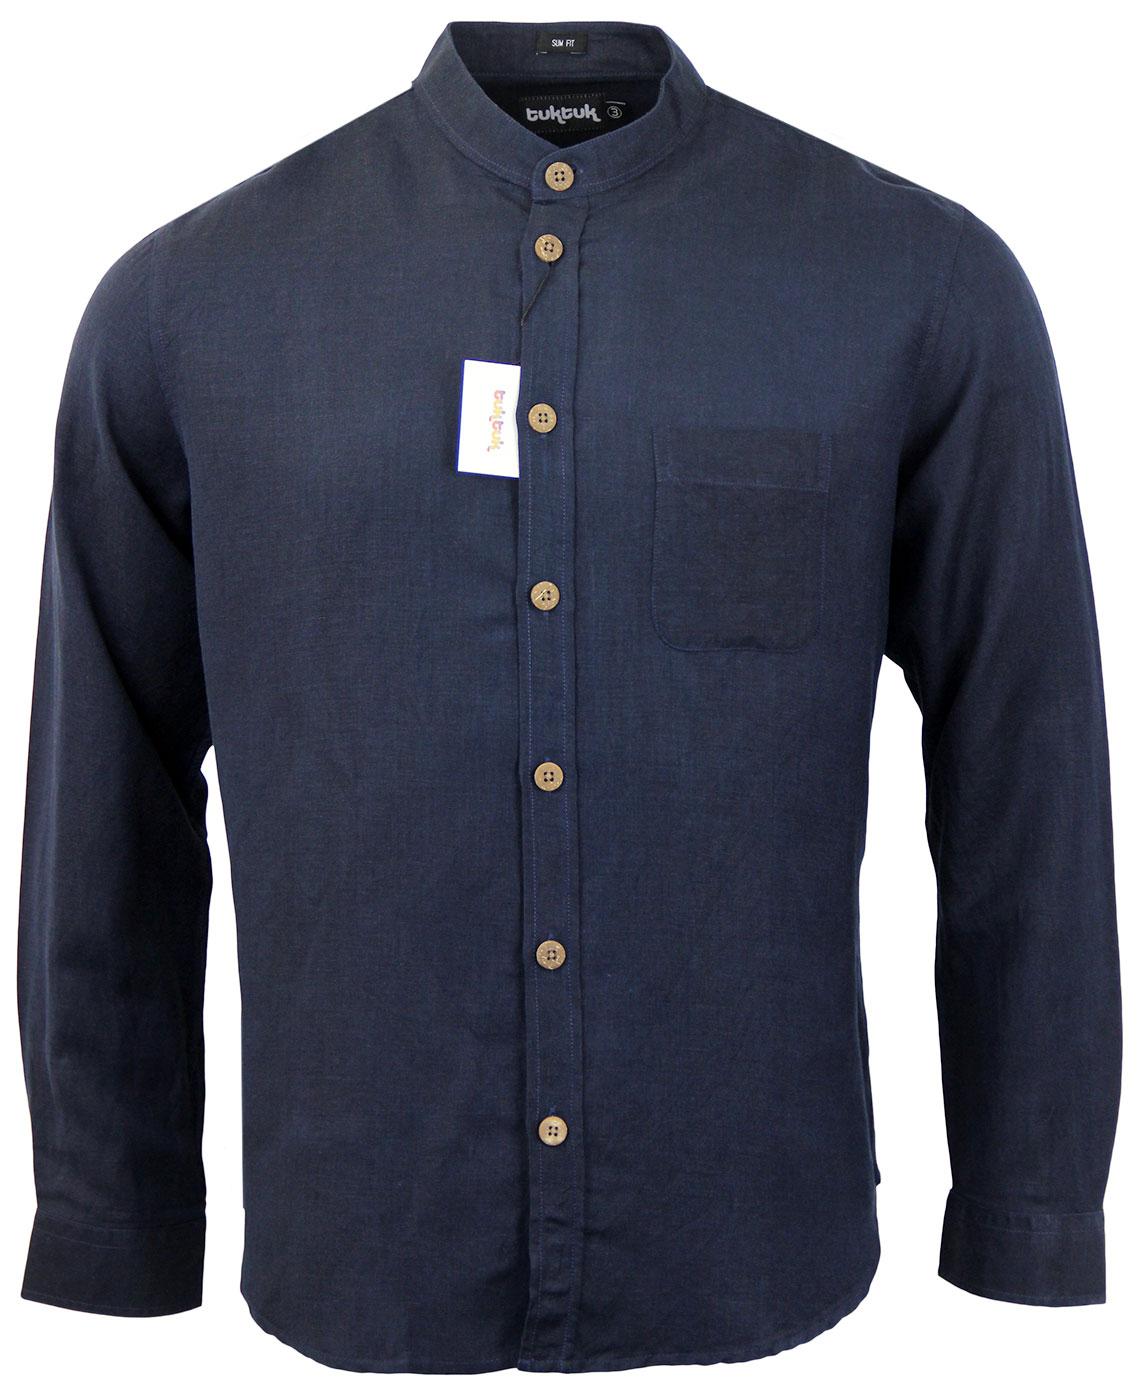 Twombly TUKTUK Retro Mod Nehru Collar Linen Shirt